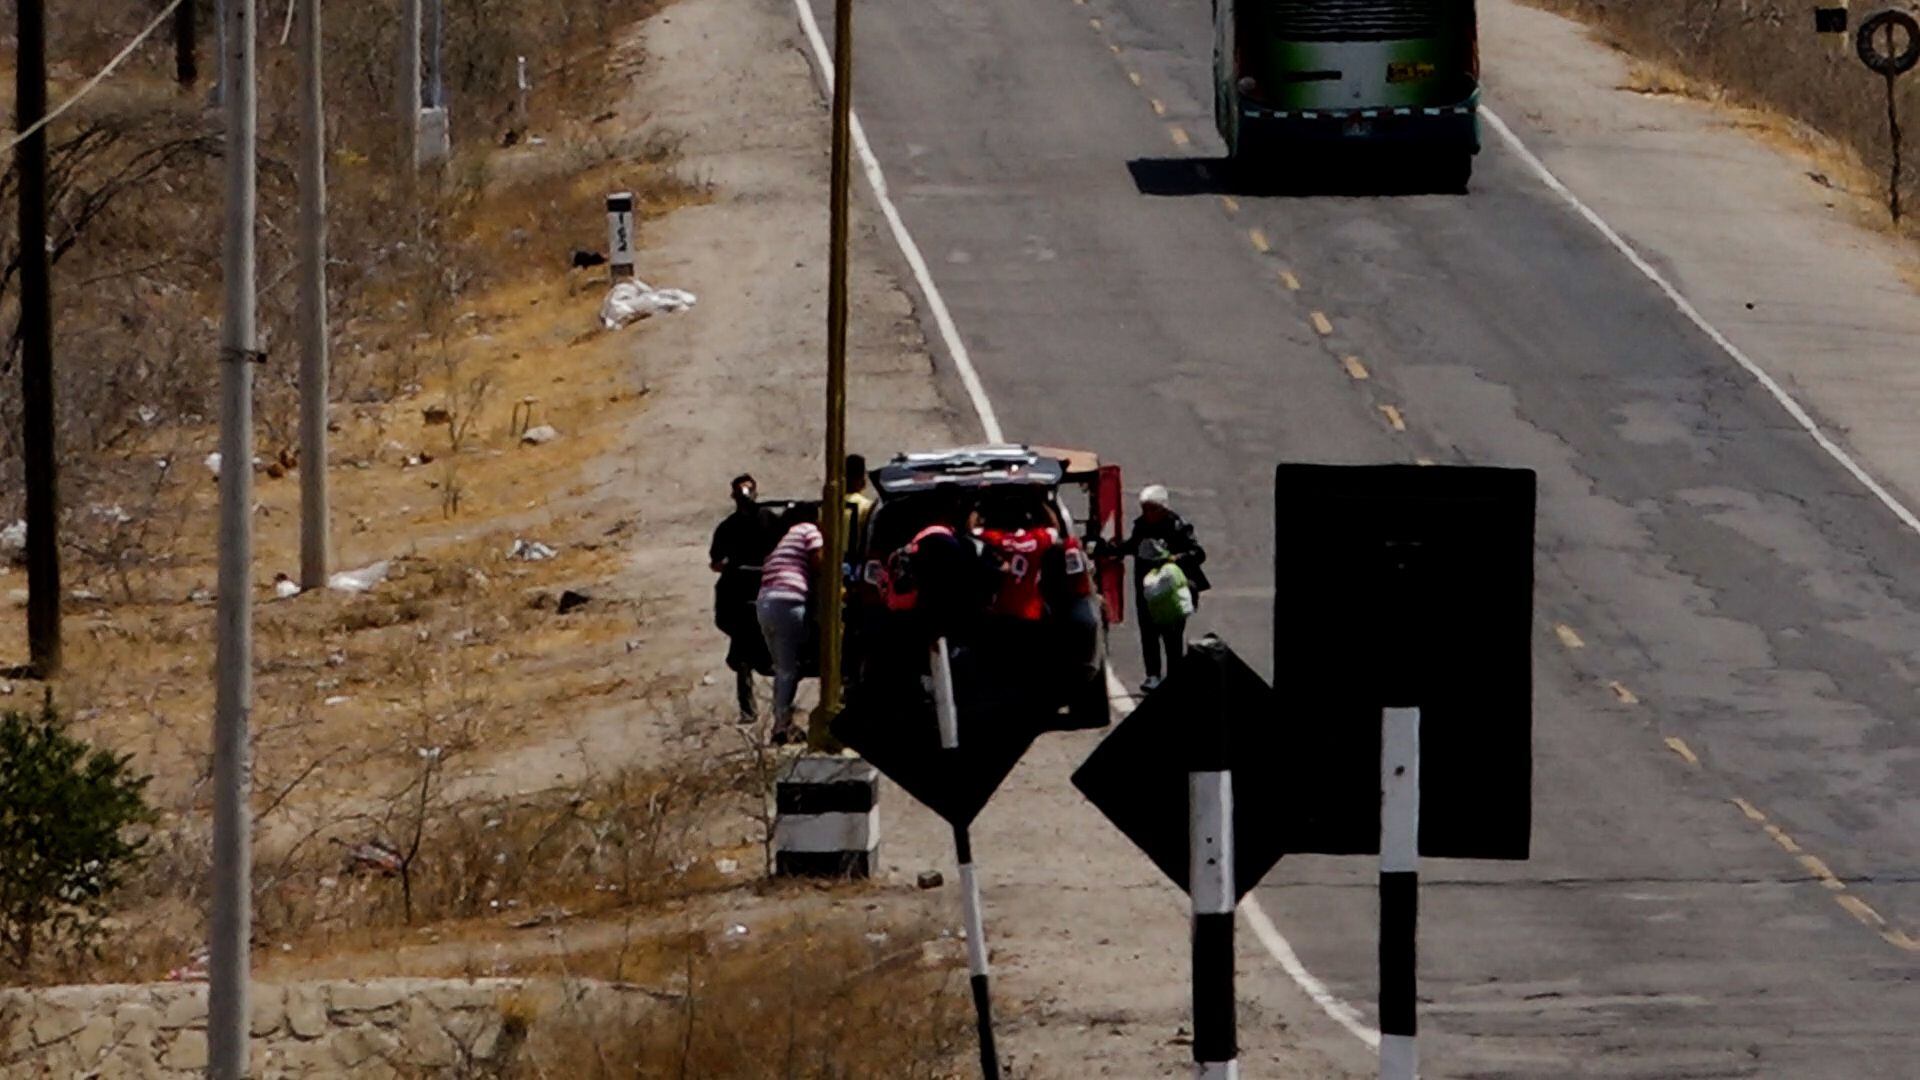 En una mototaxi pueden trasladar a familias enteras de venezolanos. Acá se observa a una mujer llevando a un niño en brazos. (Foto: Carls Mayo)